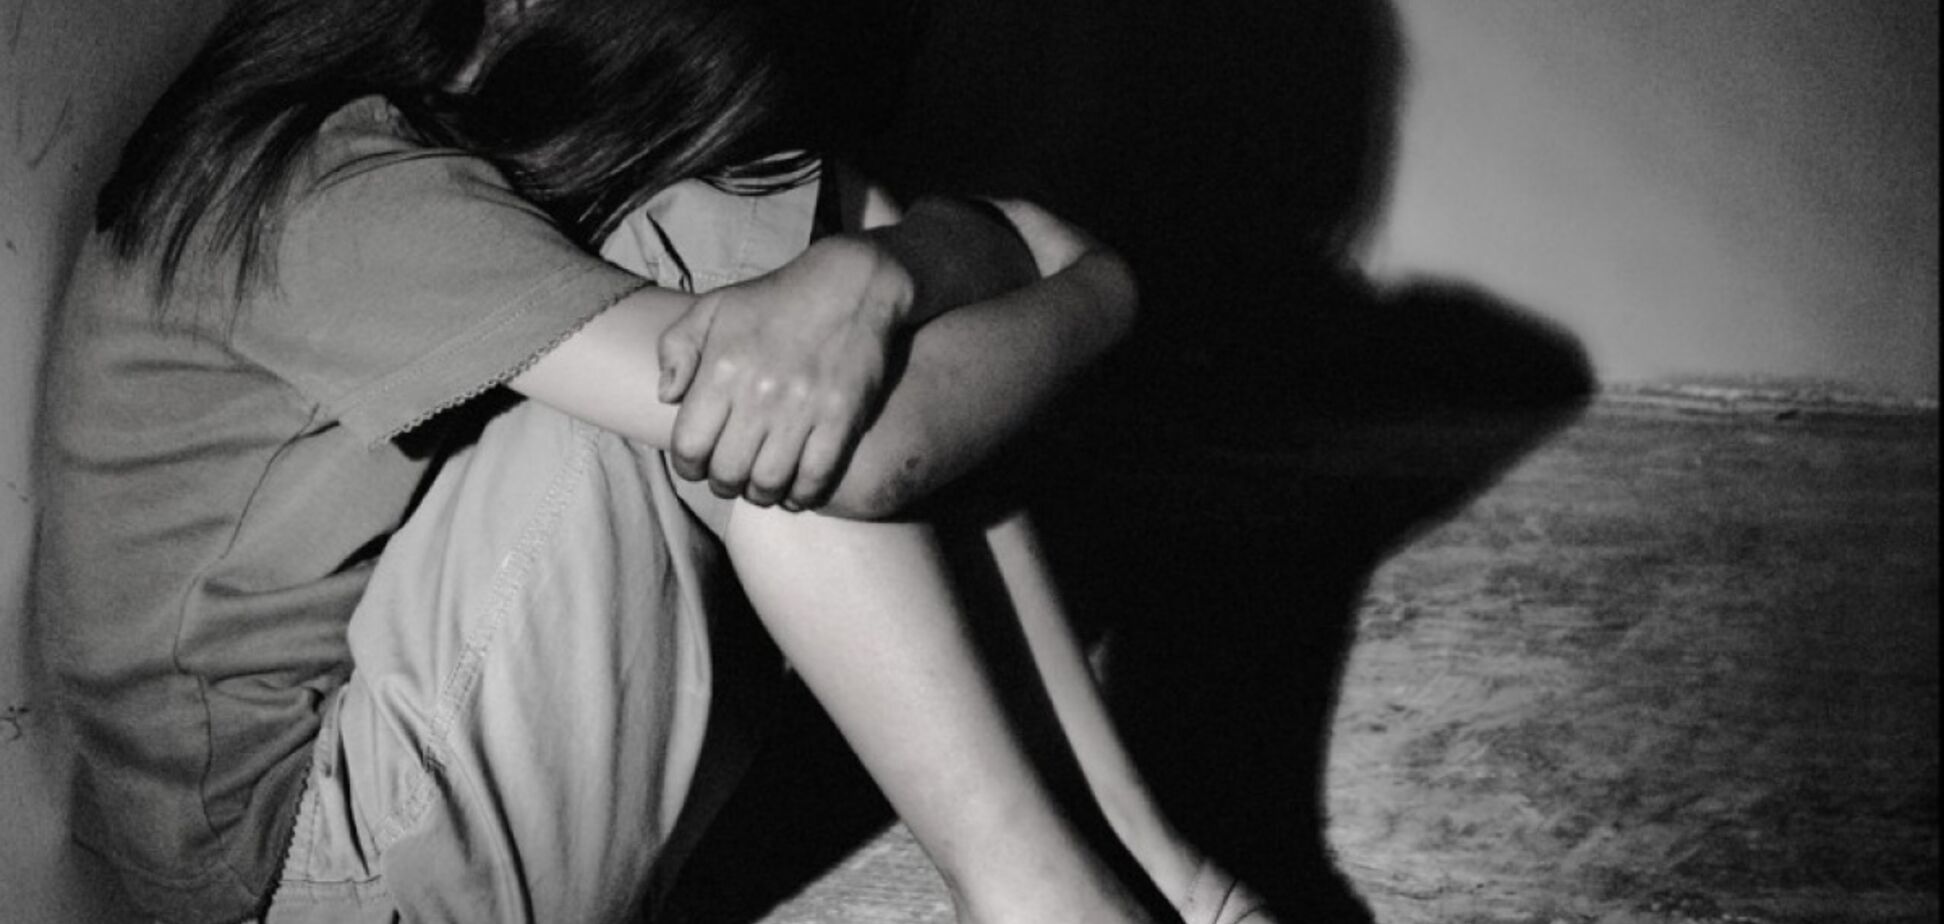 Затащил в недострой: в Киеве изнасиловали 15-летнюю девочку